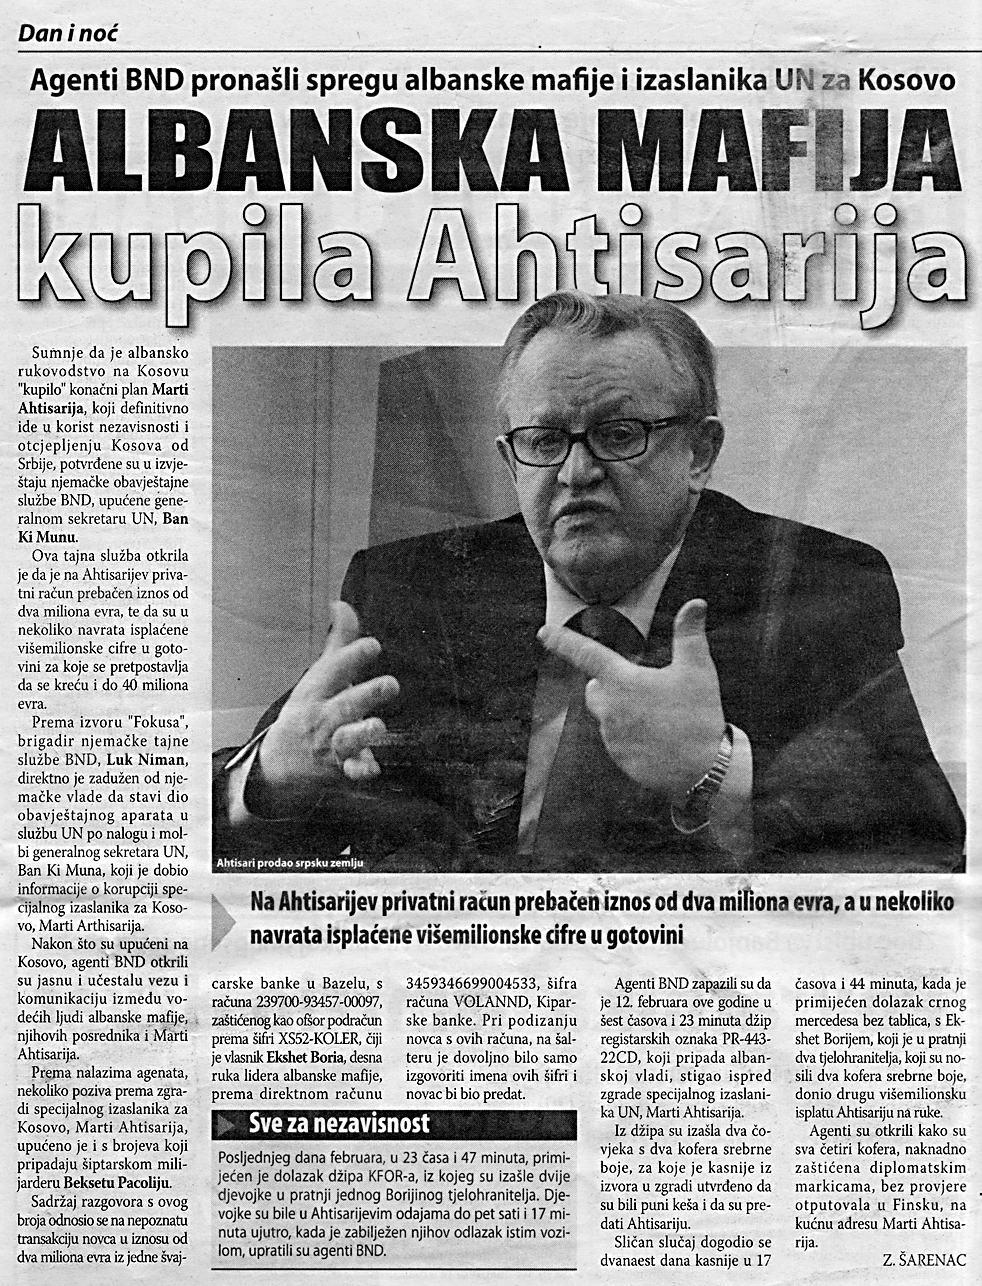 Ahtisaari